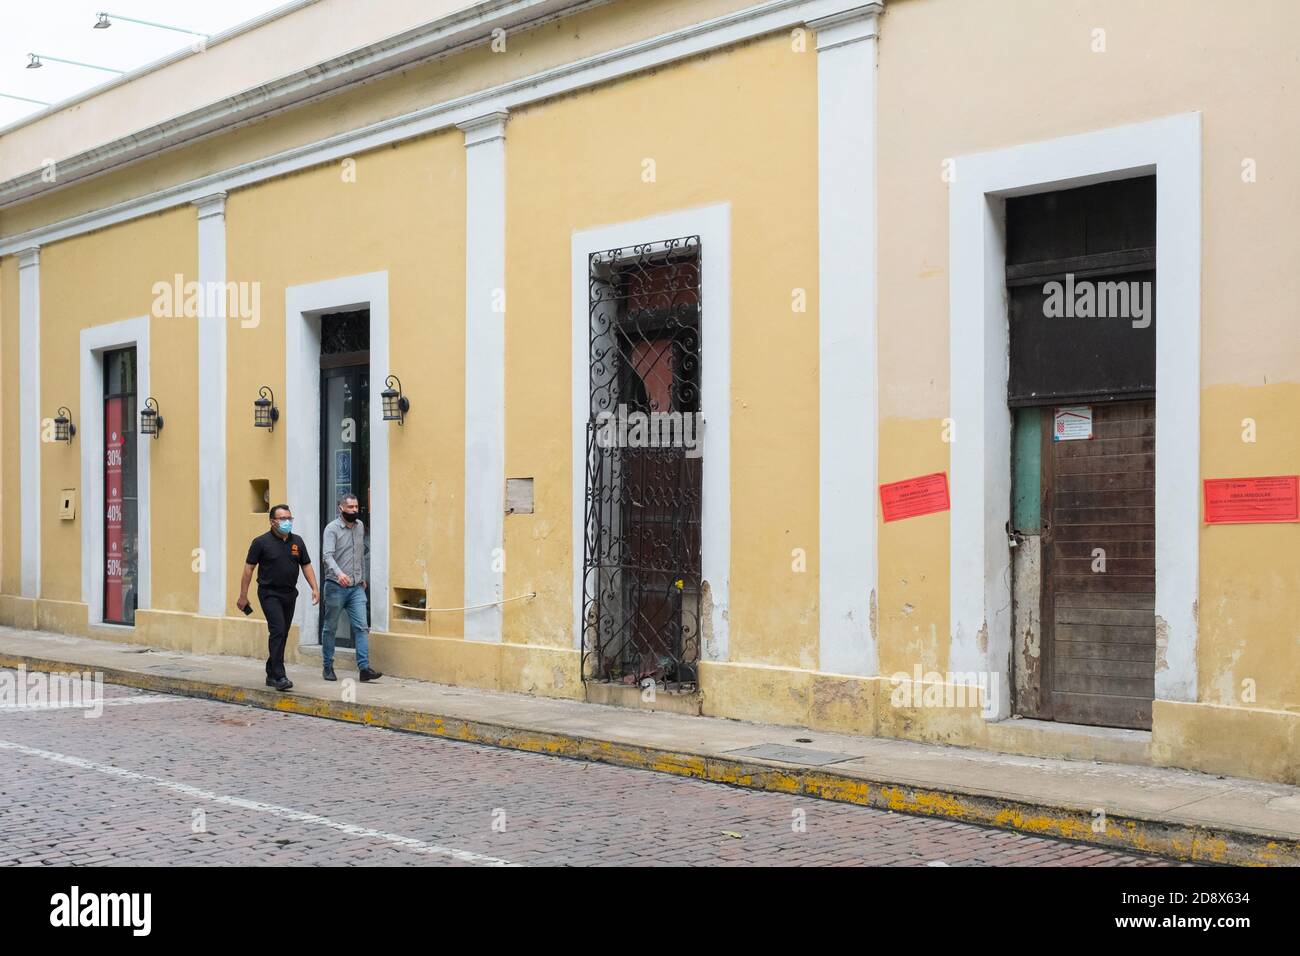 Persone che camminano in un centro di Merida quasi vuoto durante il Covid19 Pandemic, novembre 2020 - molti negozi sono stati chiusi e molte imprese sono andati fuori di affari a causa delle restrizioni Coronavirus. Merida, Yucatan, Messico Foto Stock